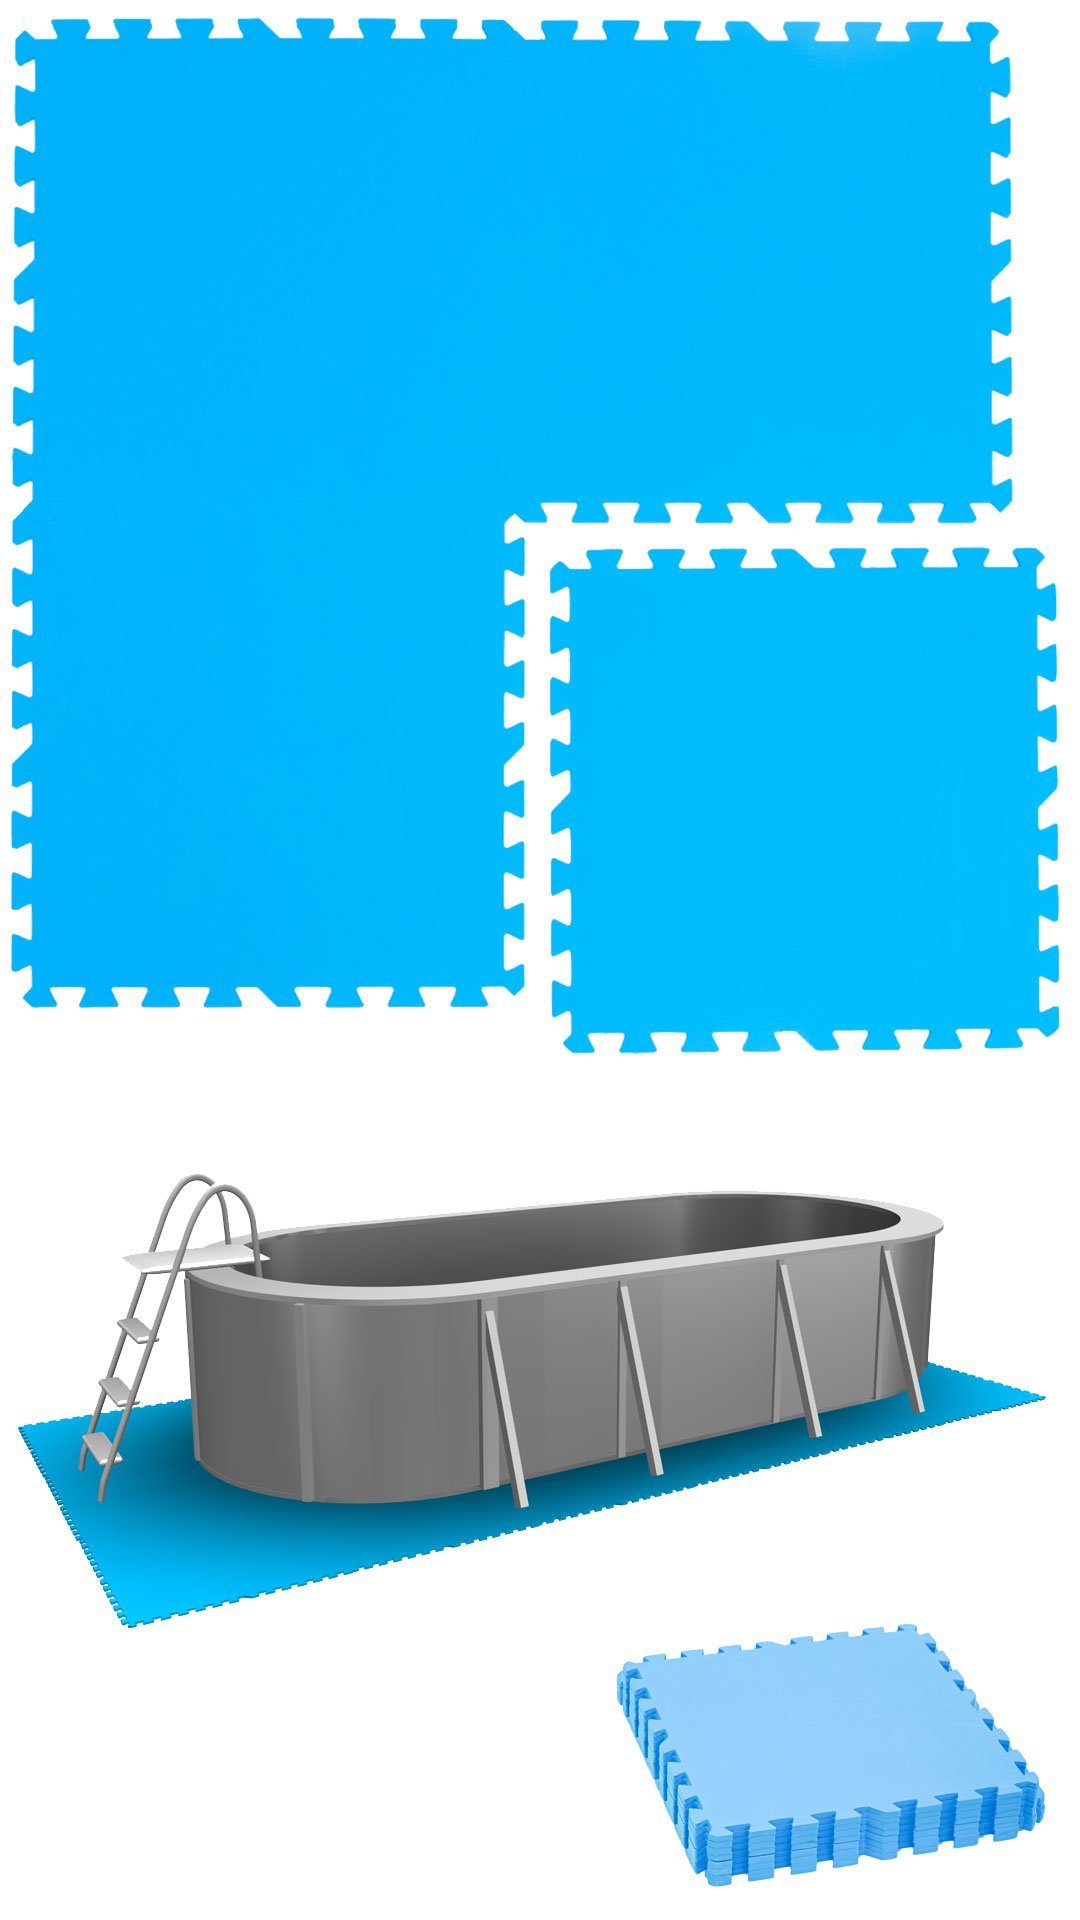 eyepower Bodenmatte Poolmatte 4er Set Bodenmatte 1qm Bodenfliesen, erweiterbares Stecksystem Blau